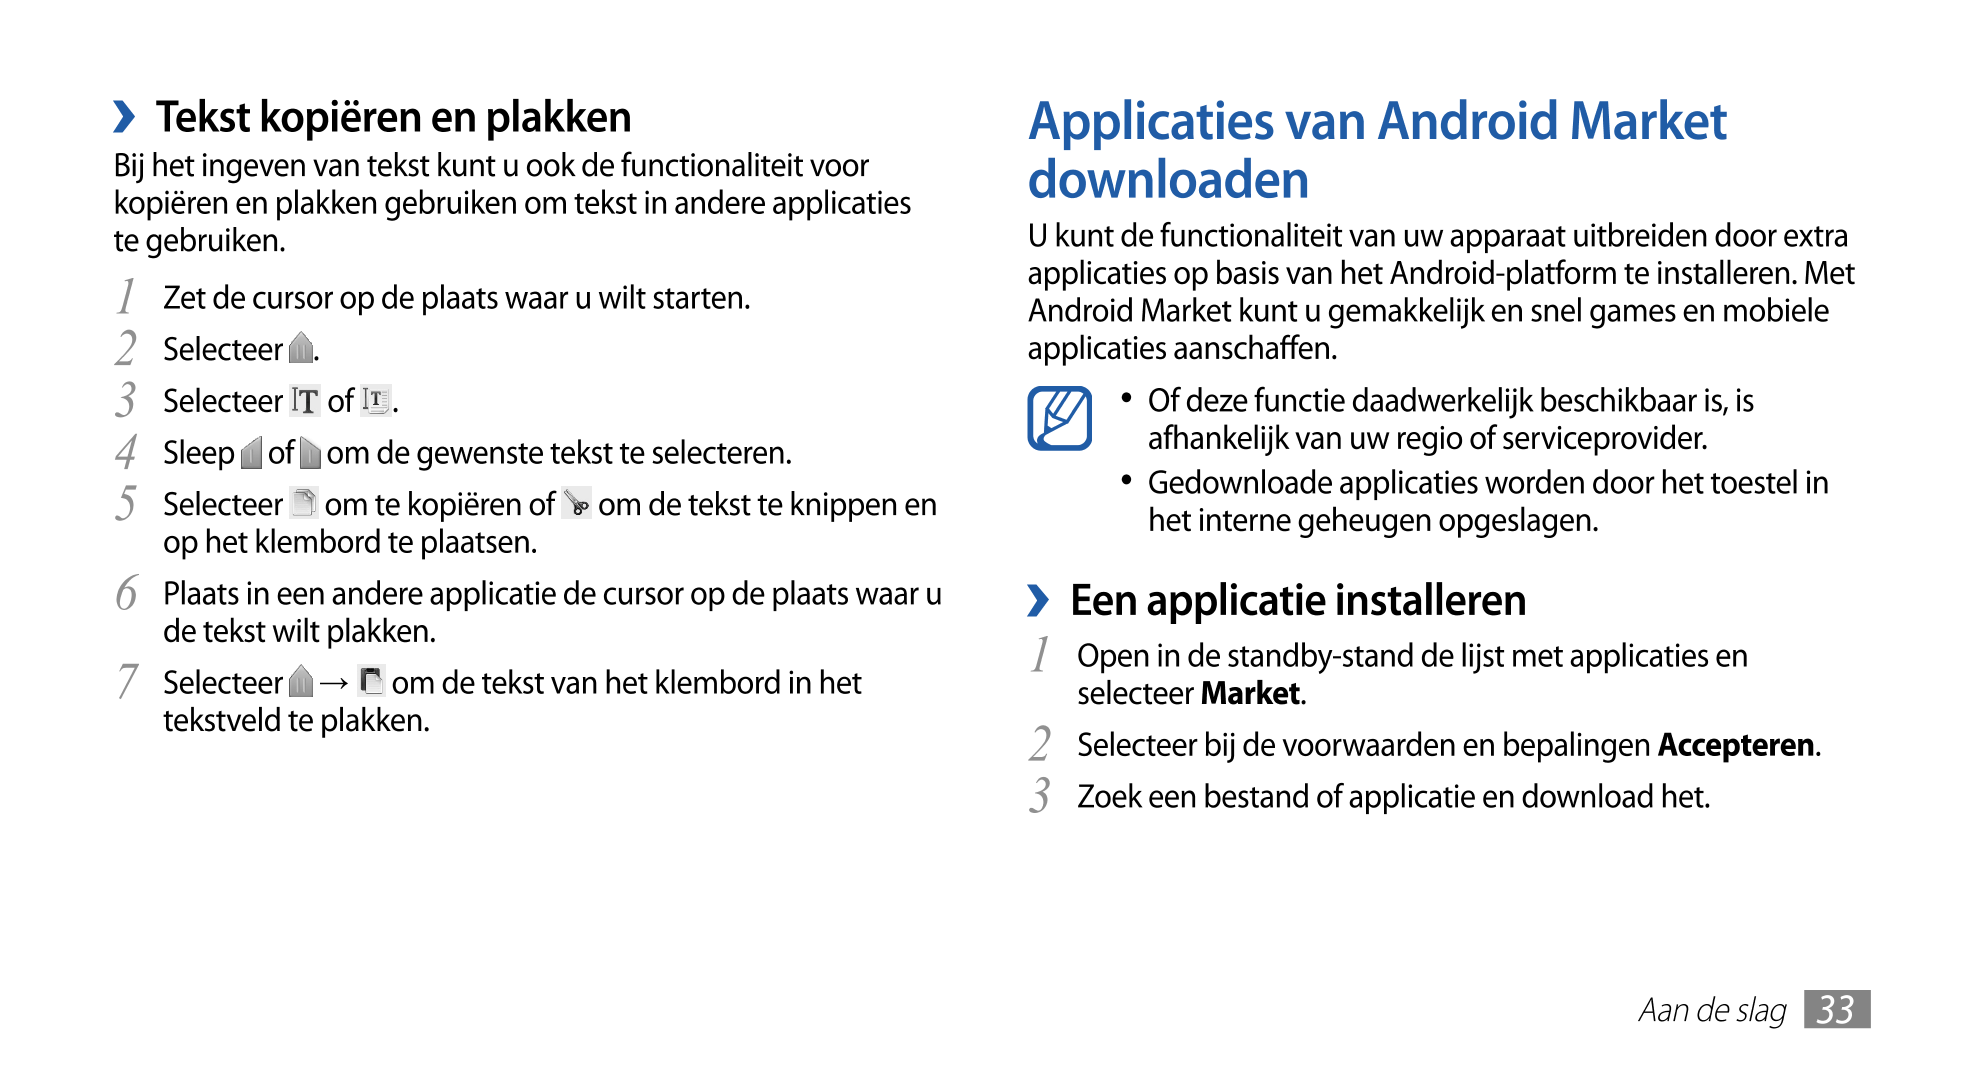   Tekst kopiëren en plakken Applicaties van Android Market 
Bij het ingeven van tekst kunt u ook de functionaliteit voor  downlo